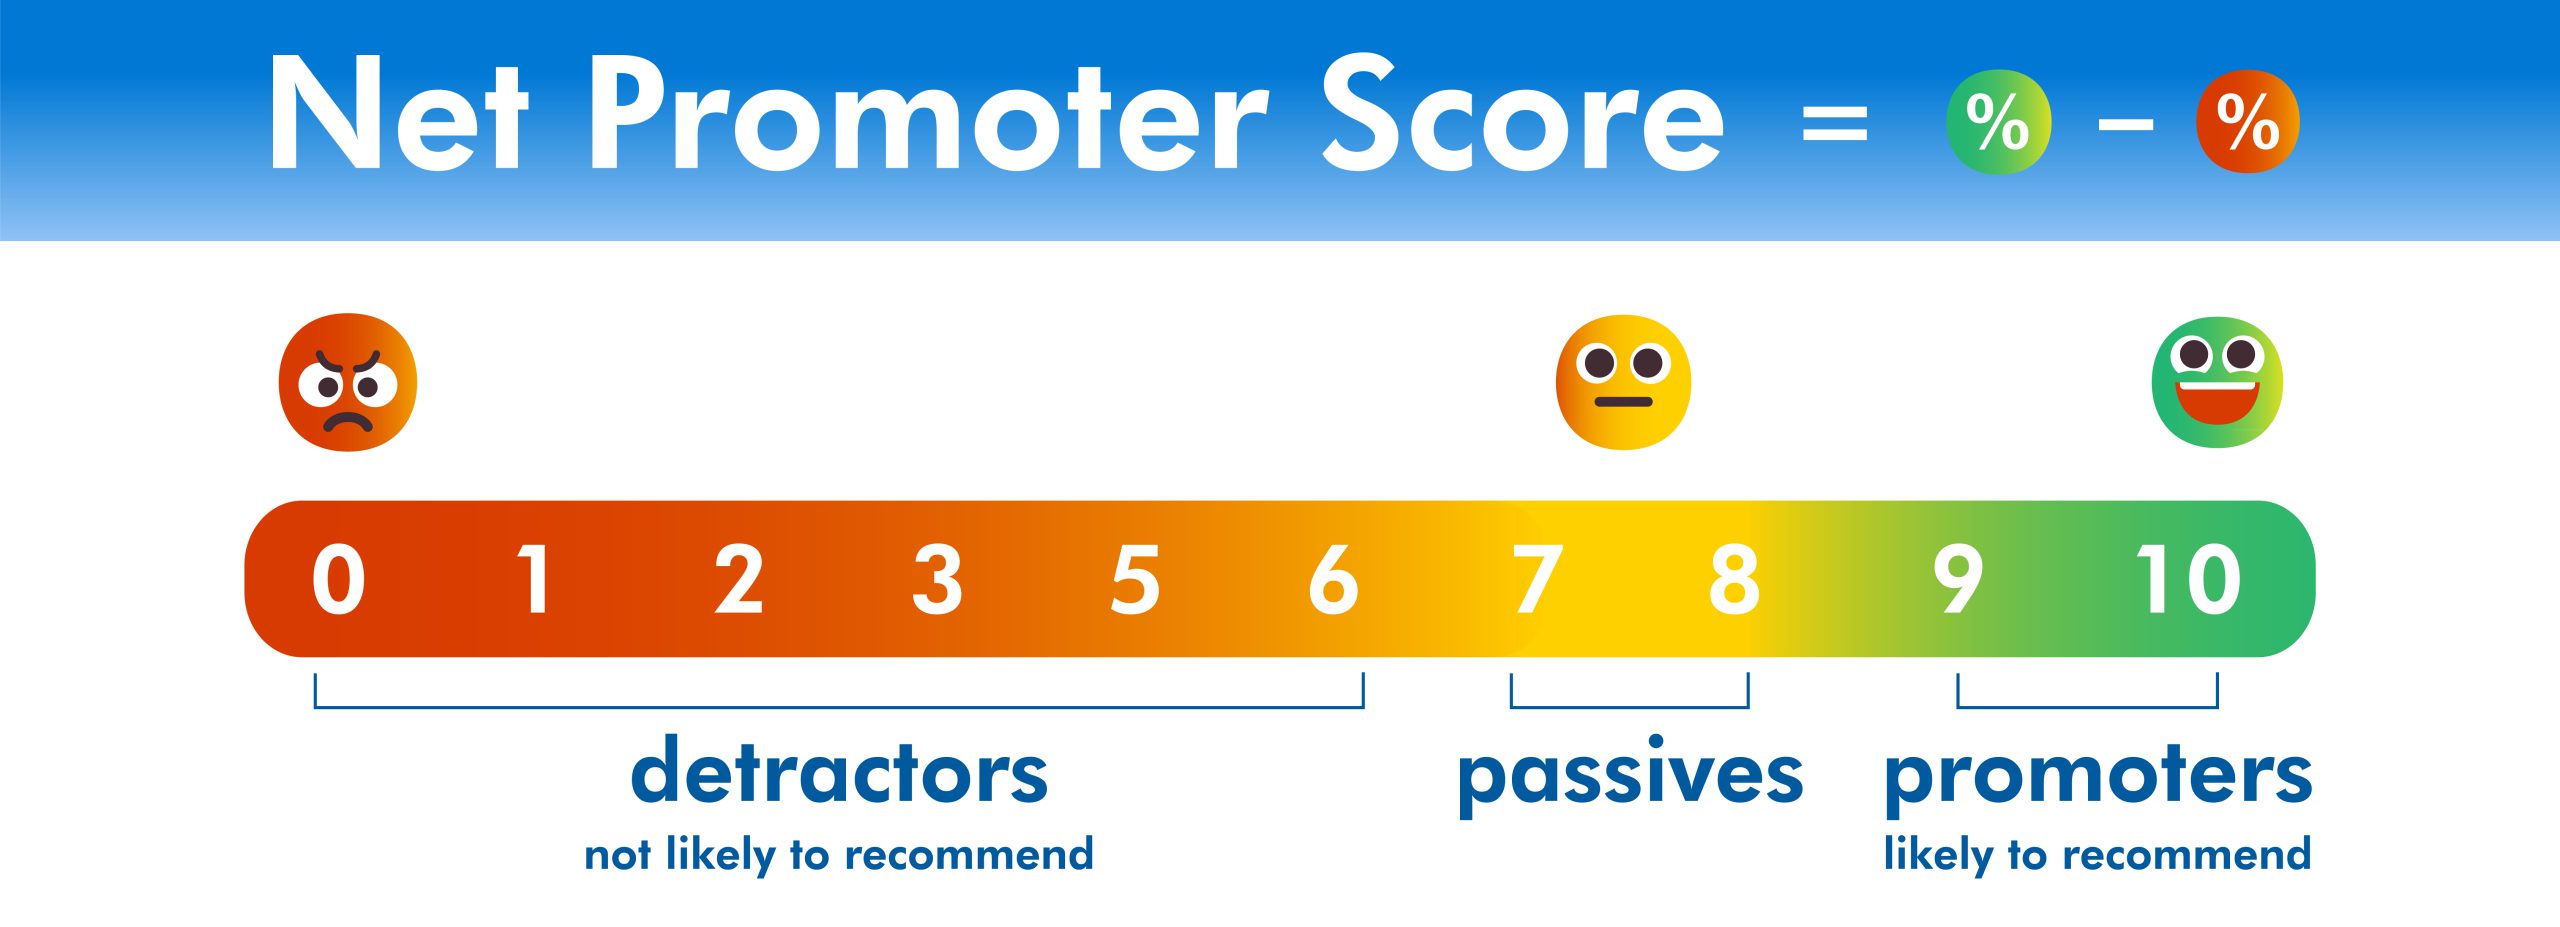 Net Promoter Score Scale 1-10